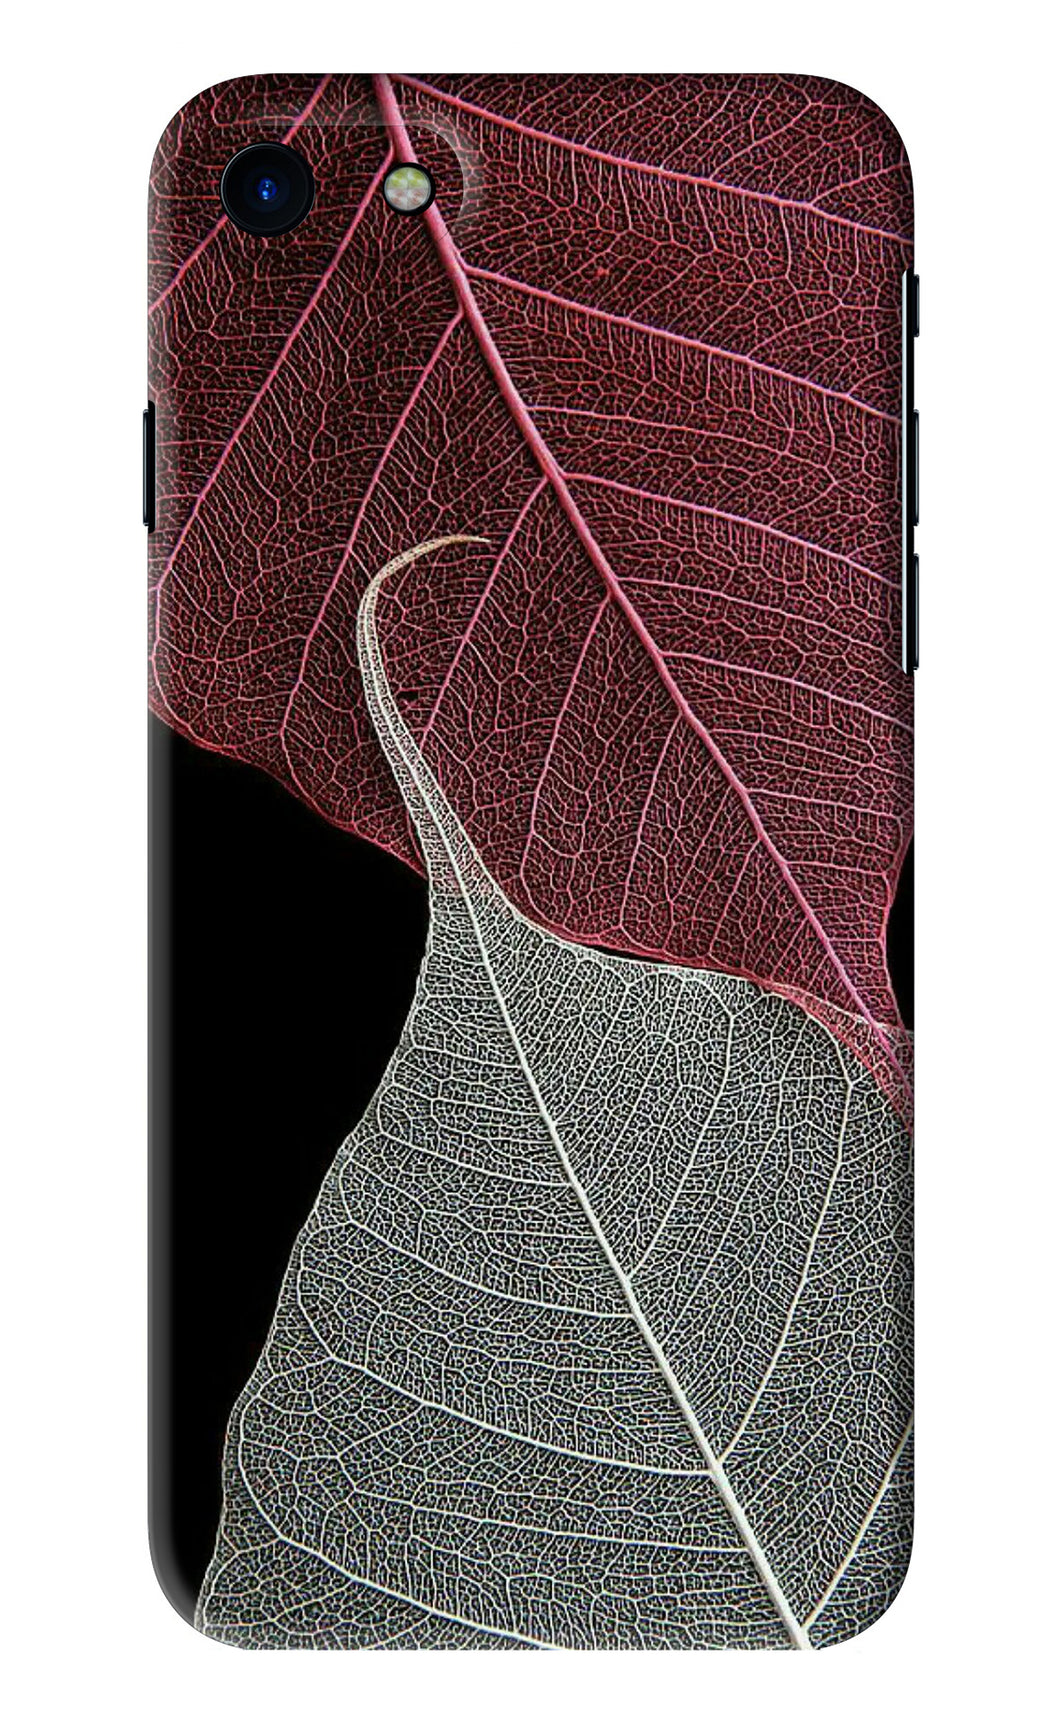 Leaf Pattern iPhone SE 2020 Back Skin Wrap